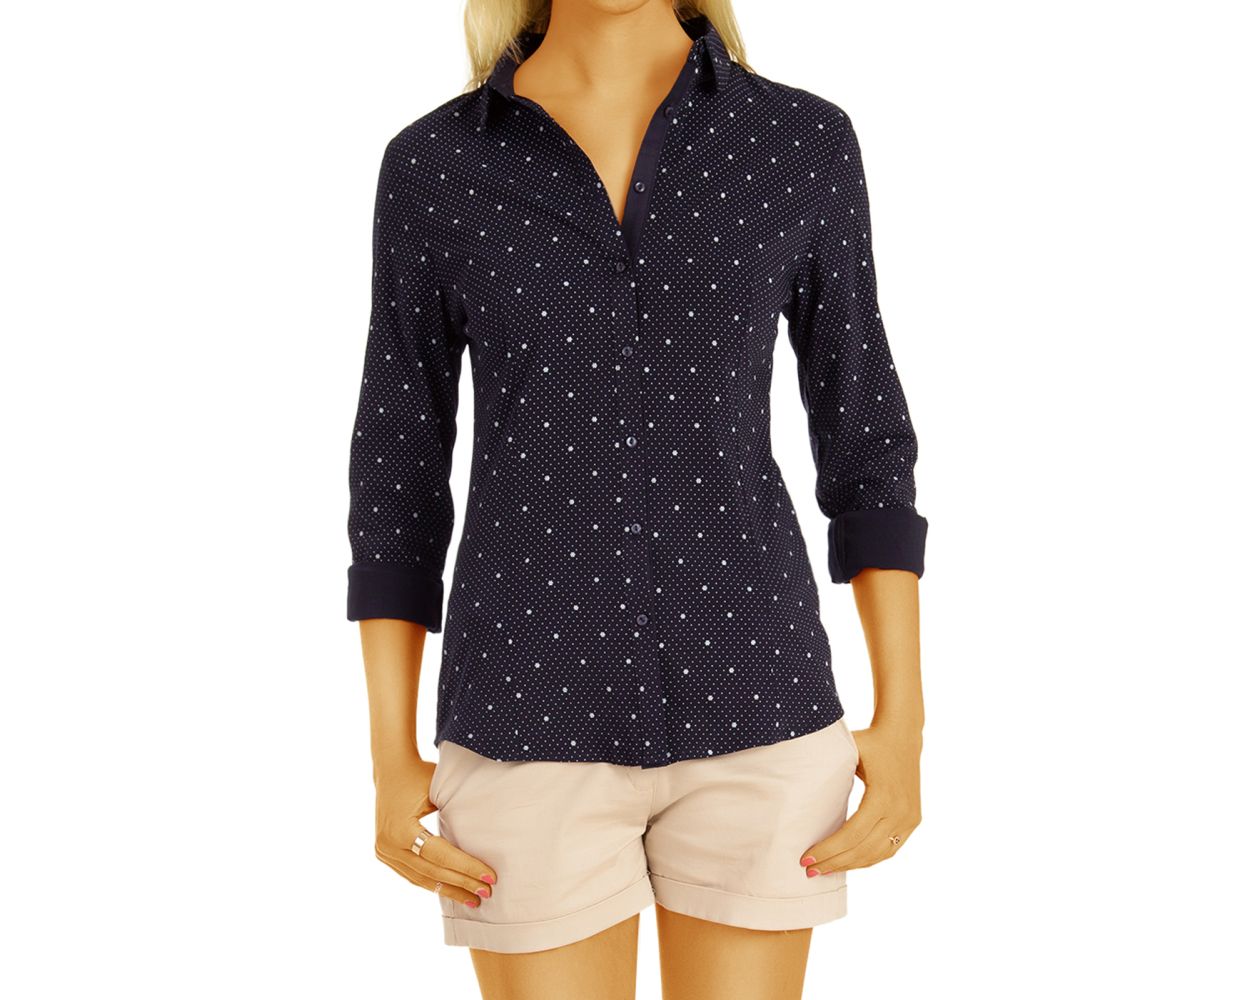 Be Styled Maritimes Tailliertes Blusen Hemd Mit Kragen Knopfleiste Gepunktet Damen Oberteil Top Kleidung T74z